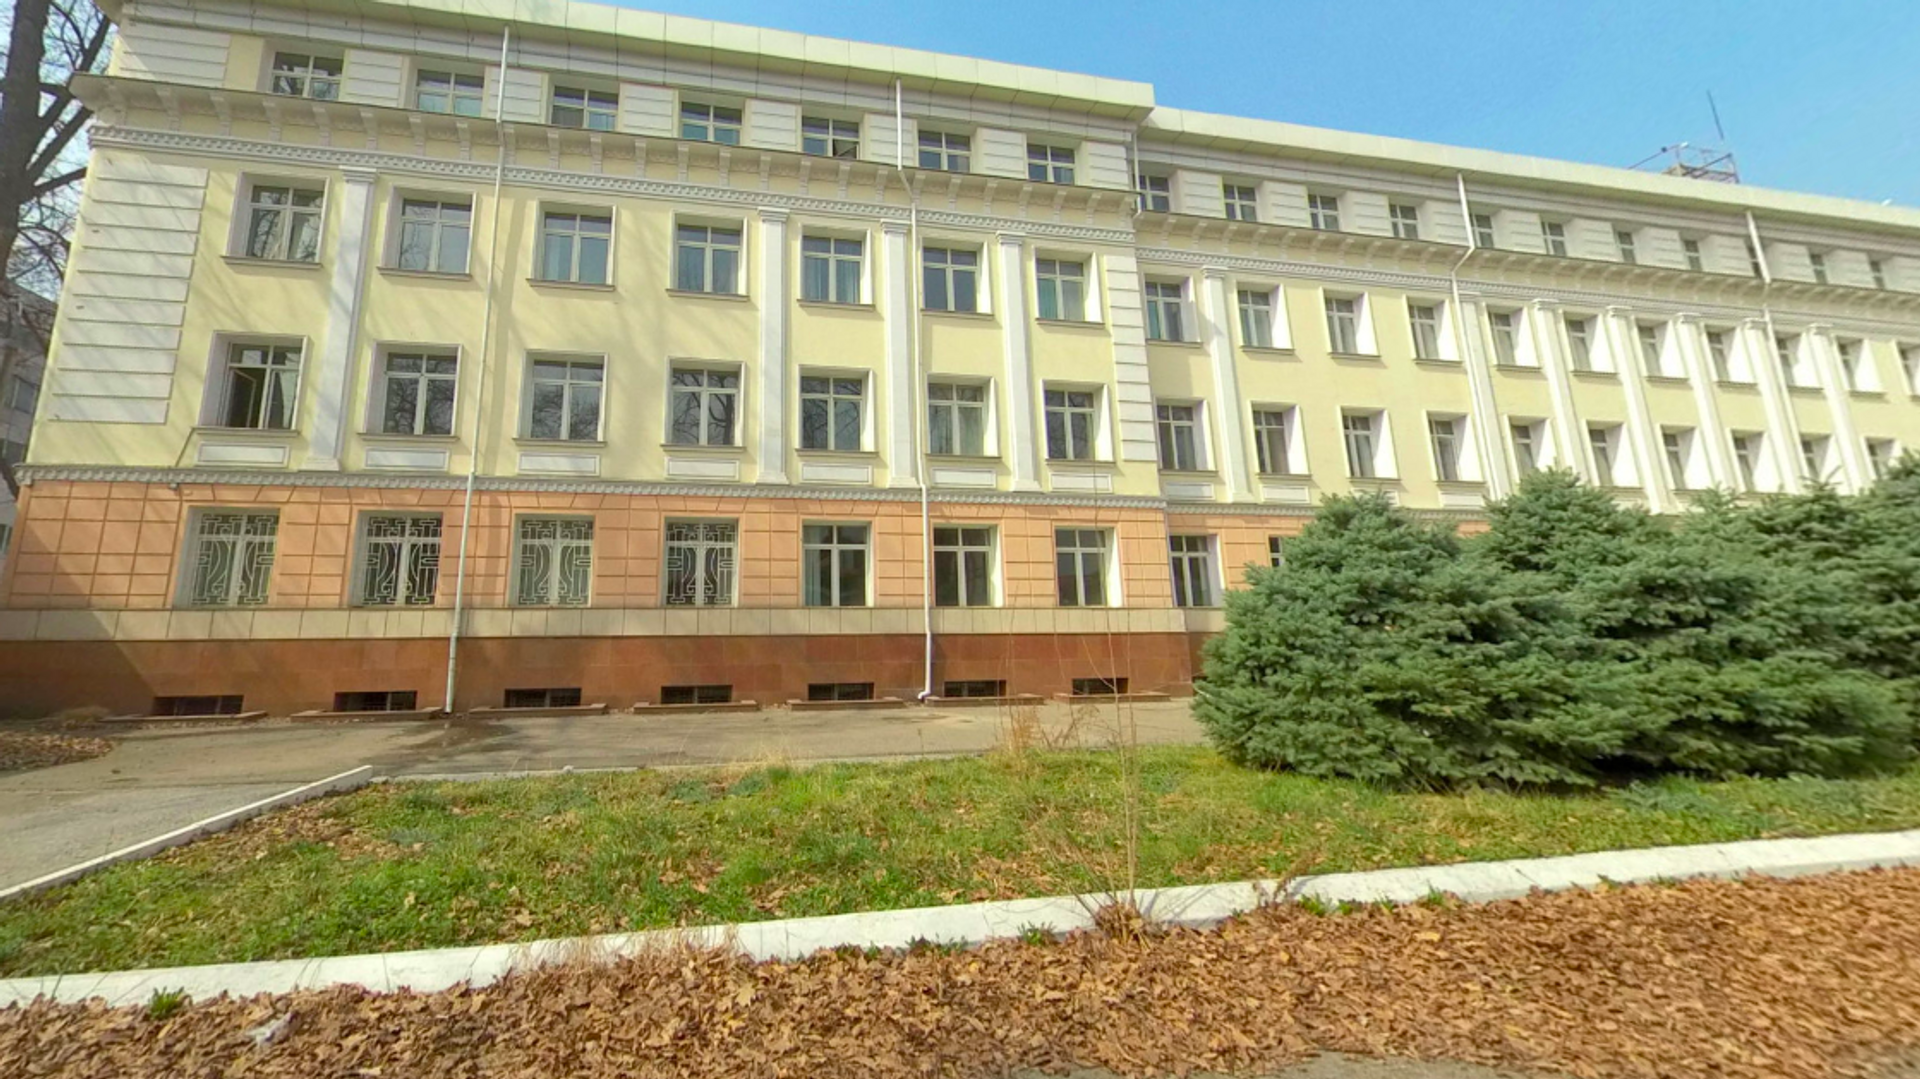 Бывшее здание СГБ Узбекистана, выставленное на продажу - Sputnik Узбекистан, 1920, 10.04.2021